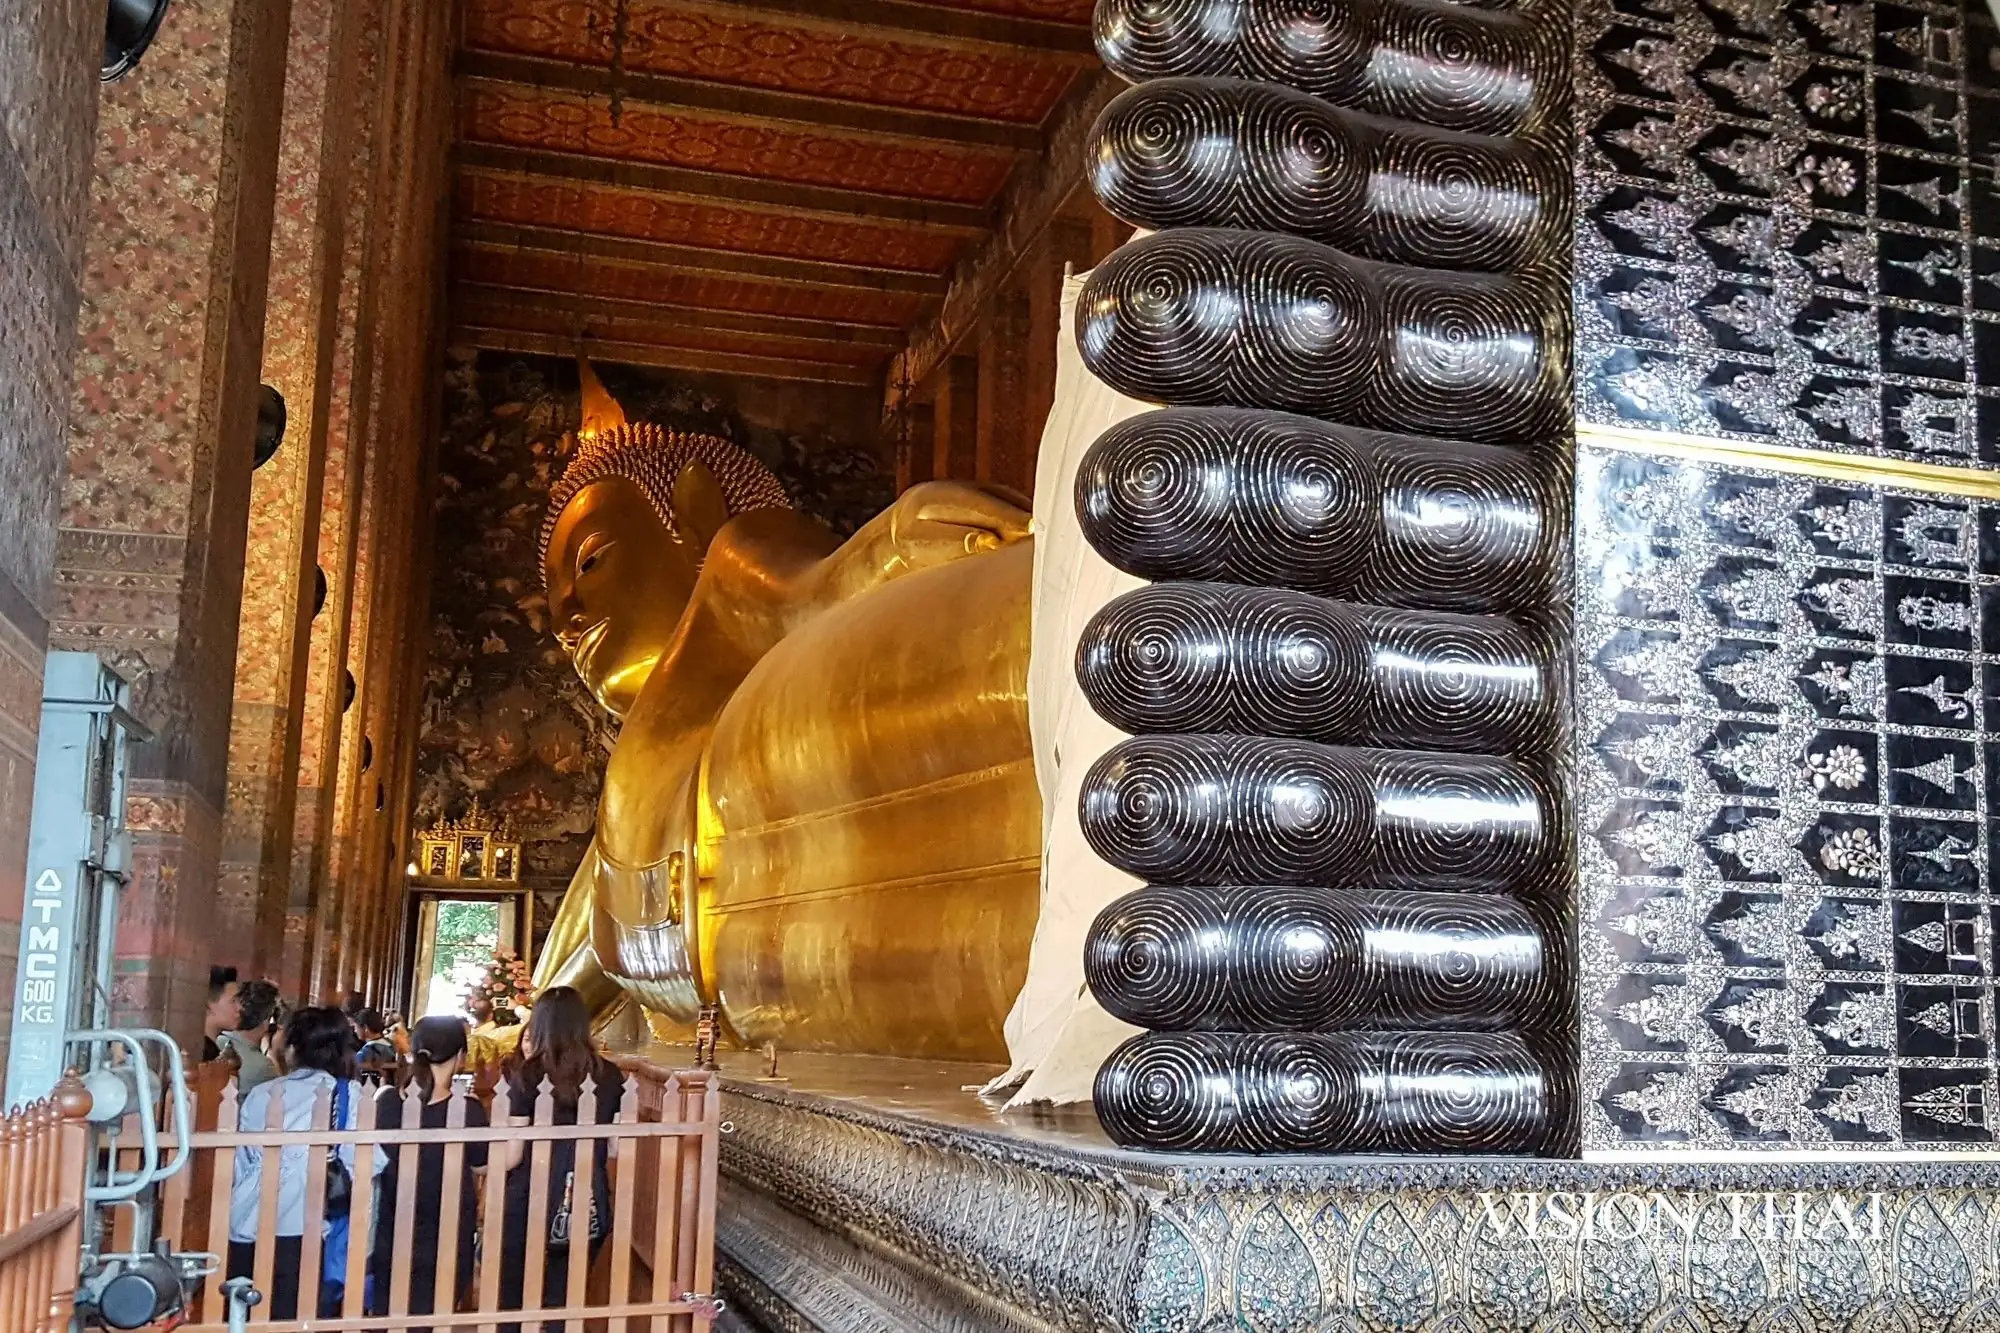 曼谷臥佛寺 Wat Pho 泰國最大的室內臥佛藝術 寺內附設按摩學校提供正統泰式古法按摩